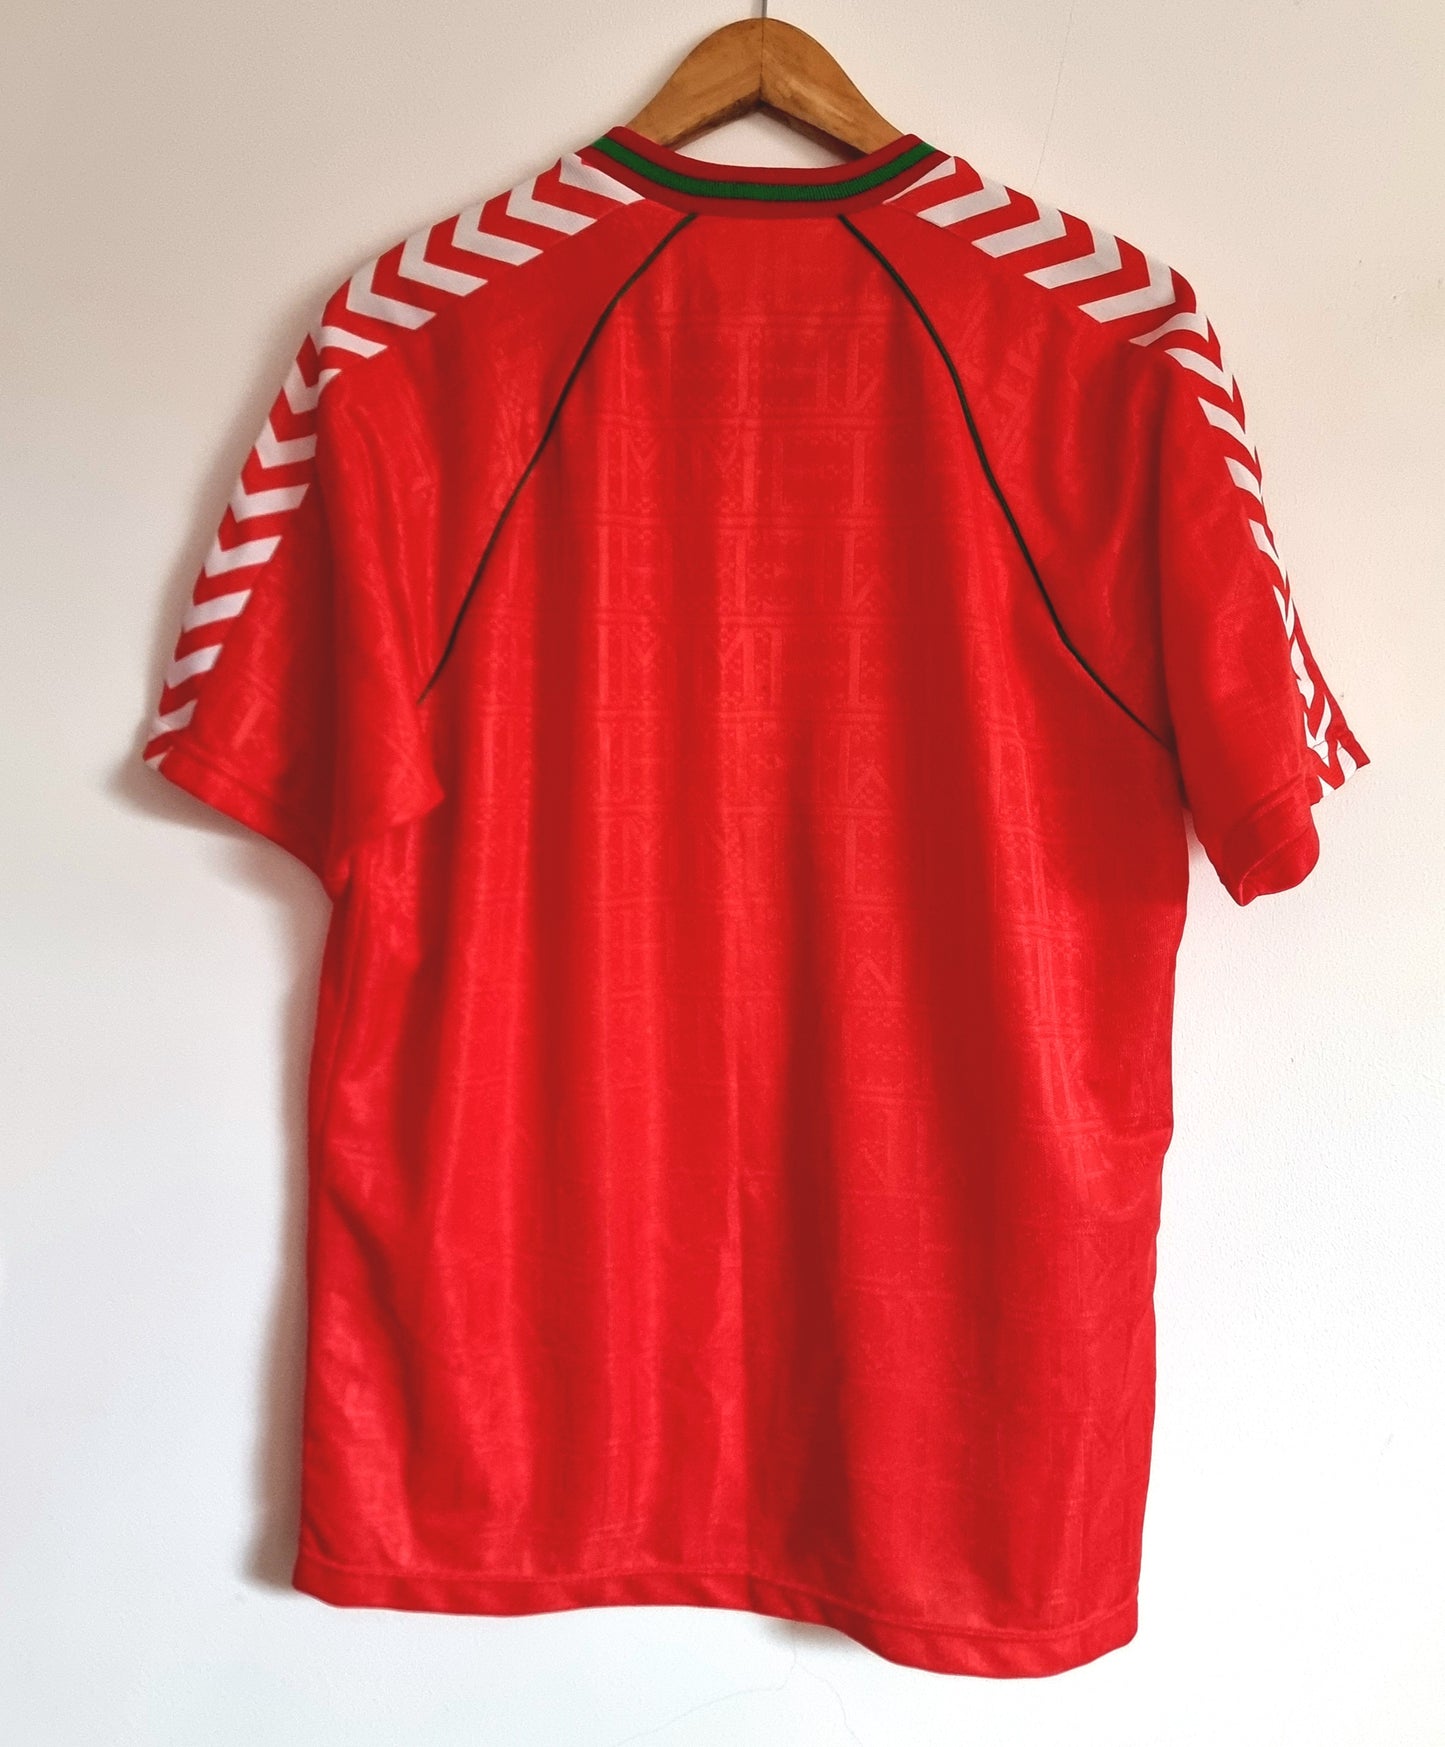 Hummel Wimbledon 88/89 FA Cup Winners Away Shirt XL